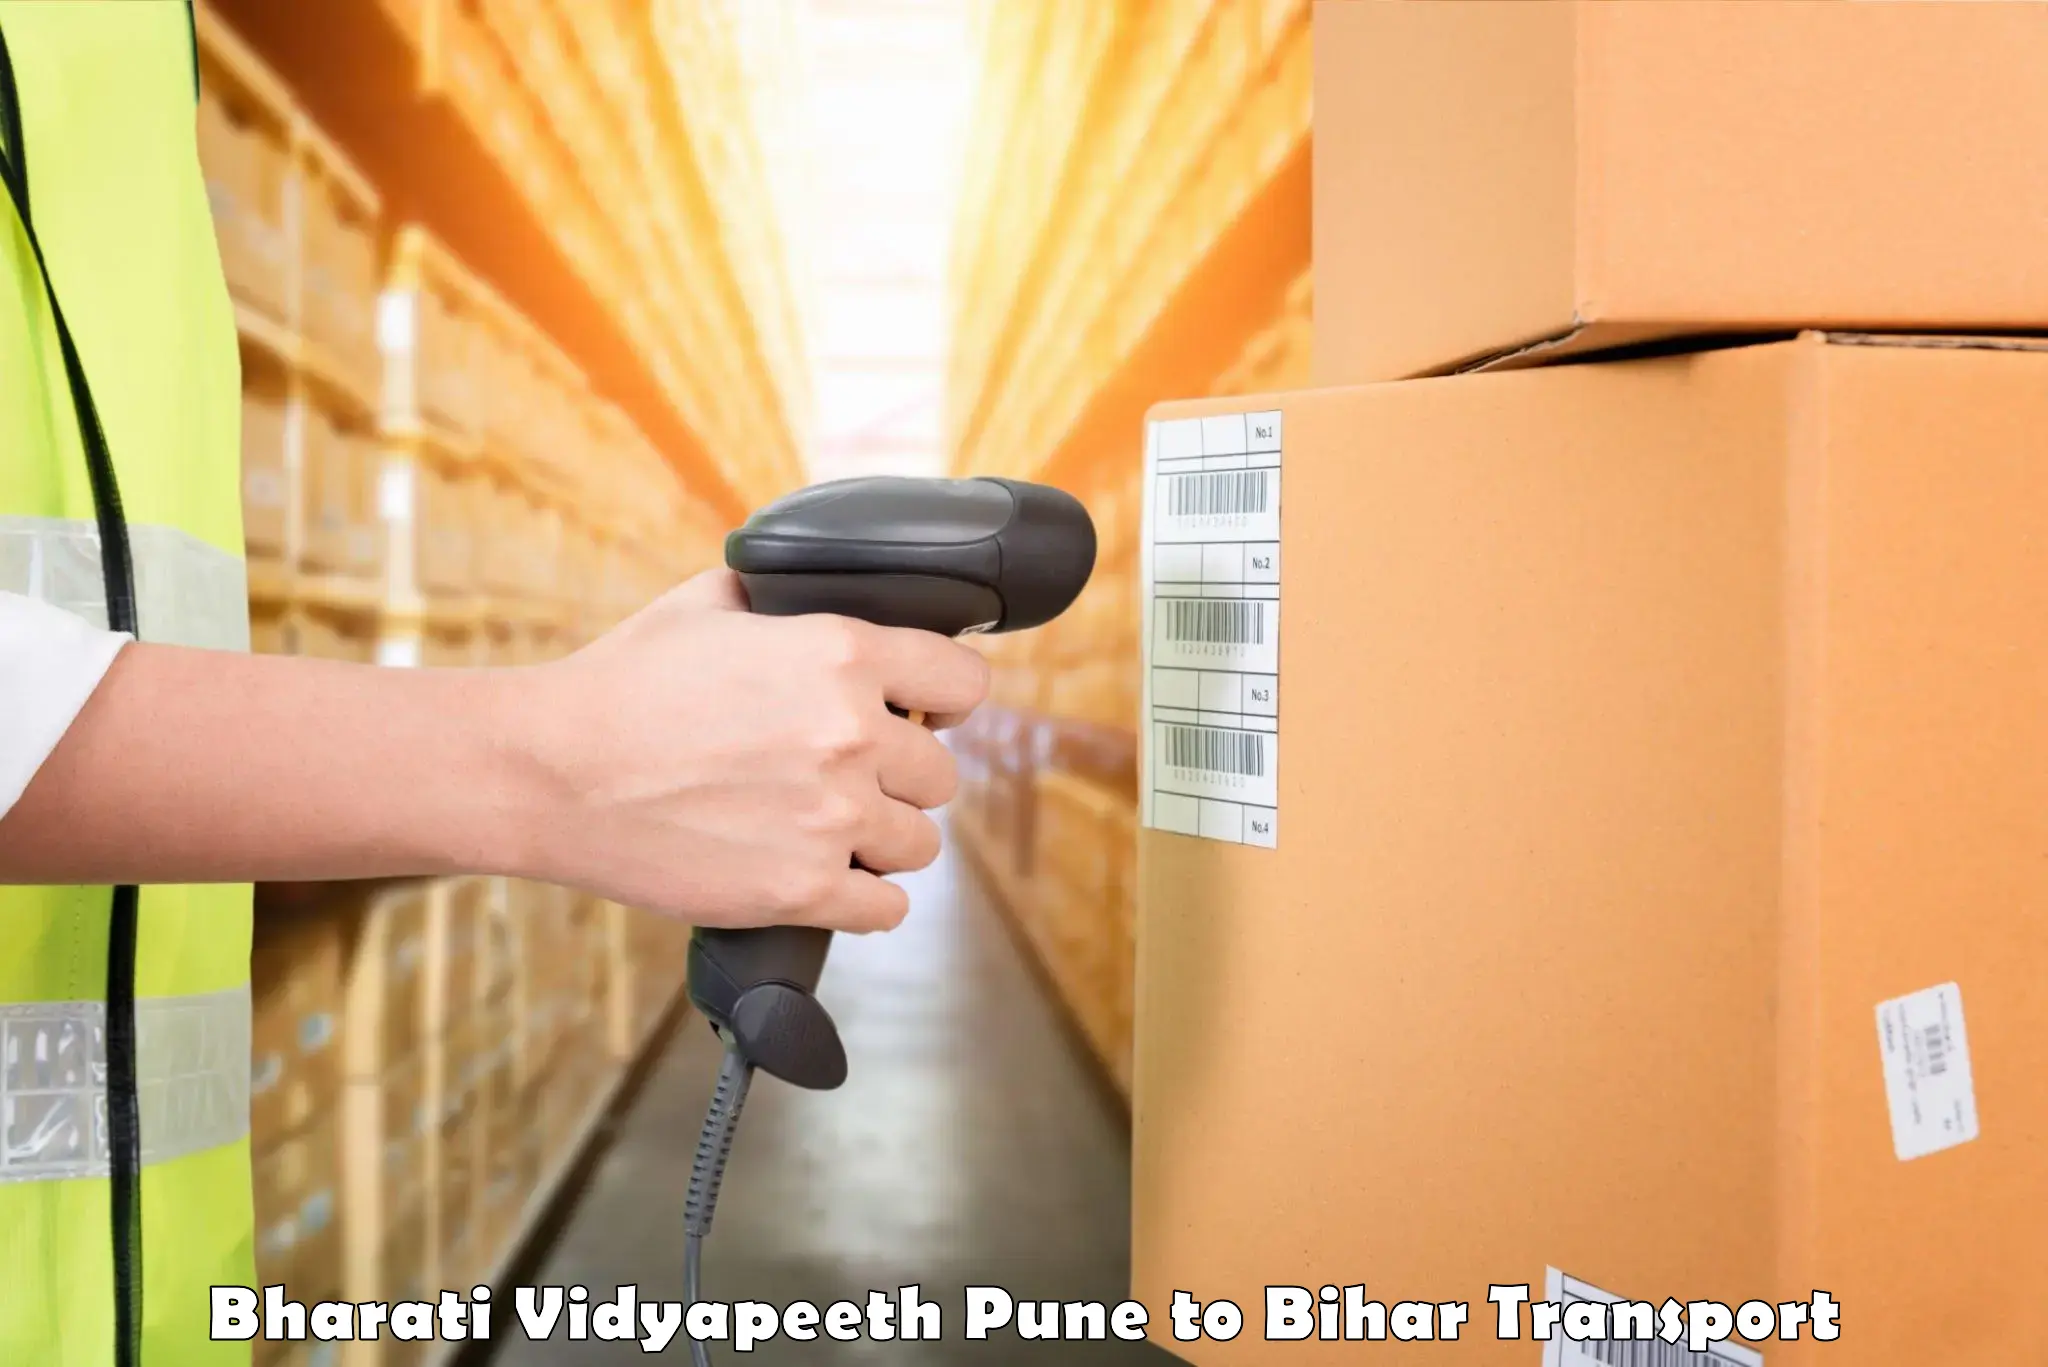 Truck transport companies in India Bharati Vidyapeeth Pune to Chhapra